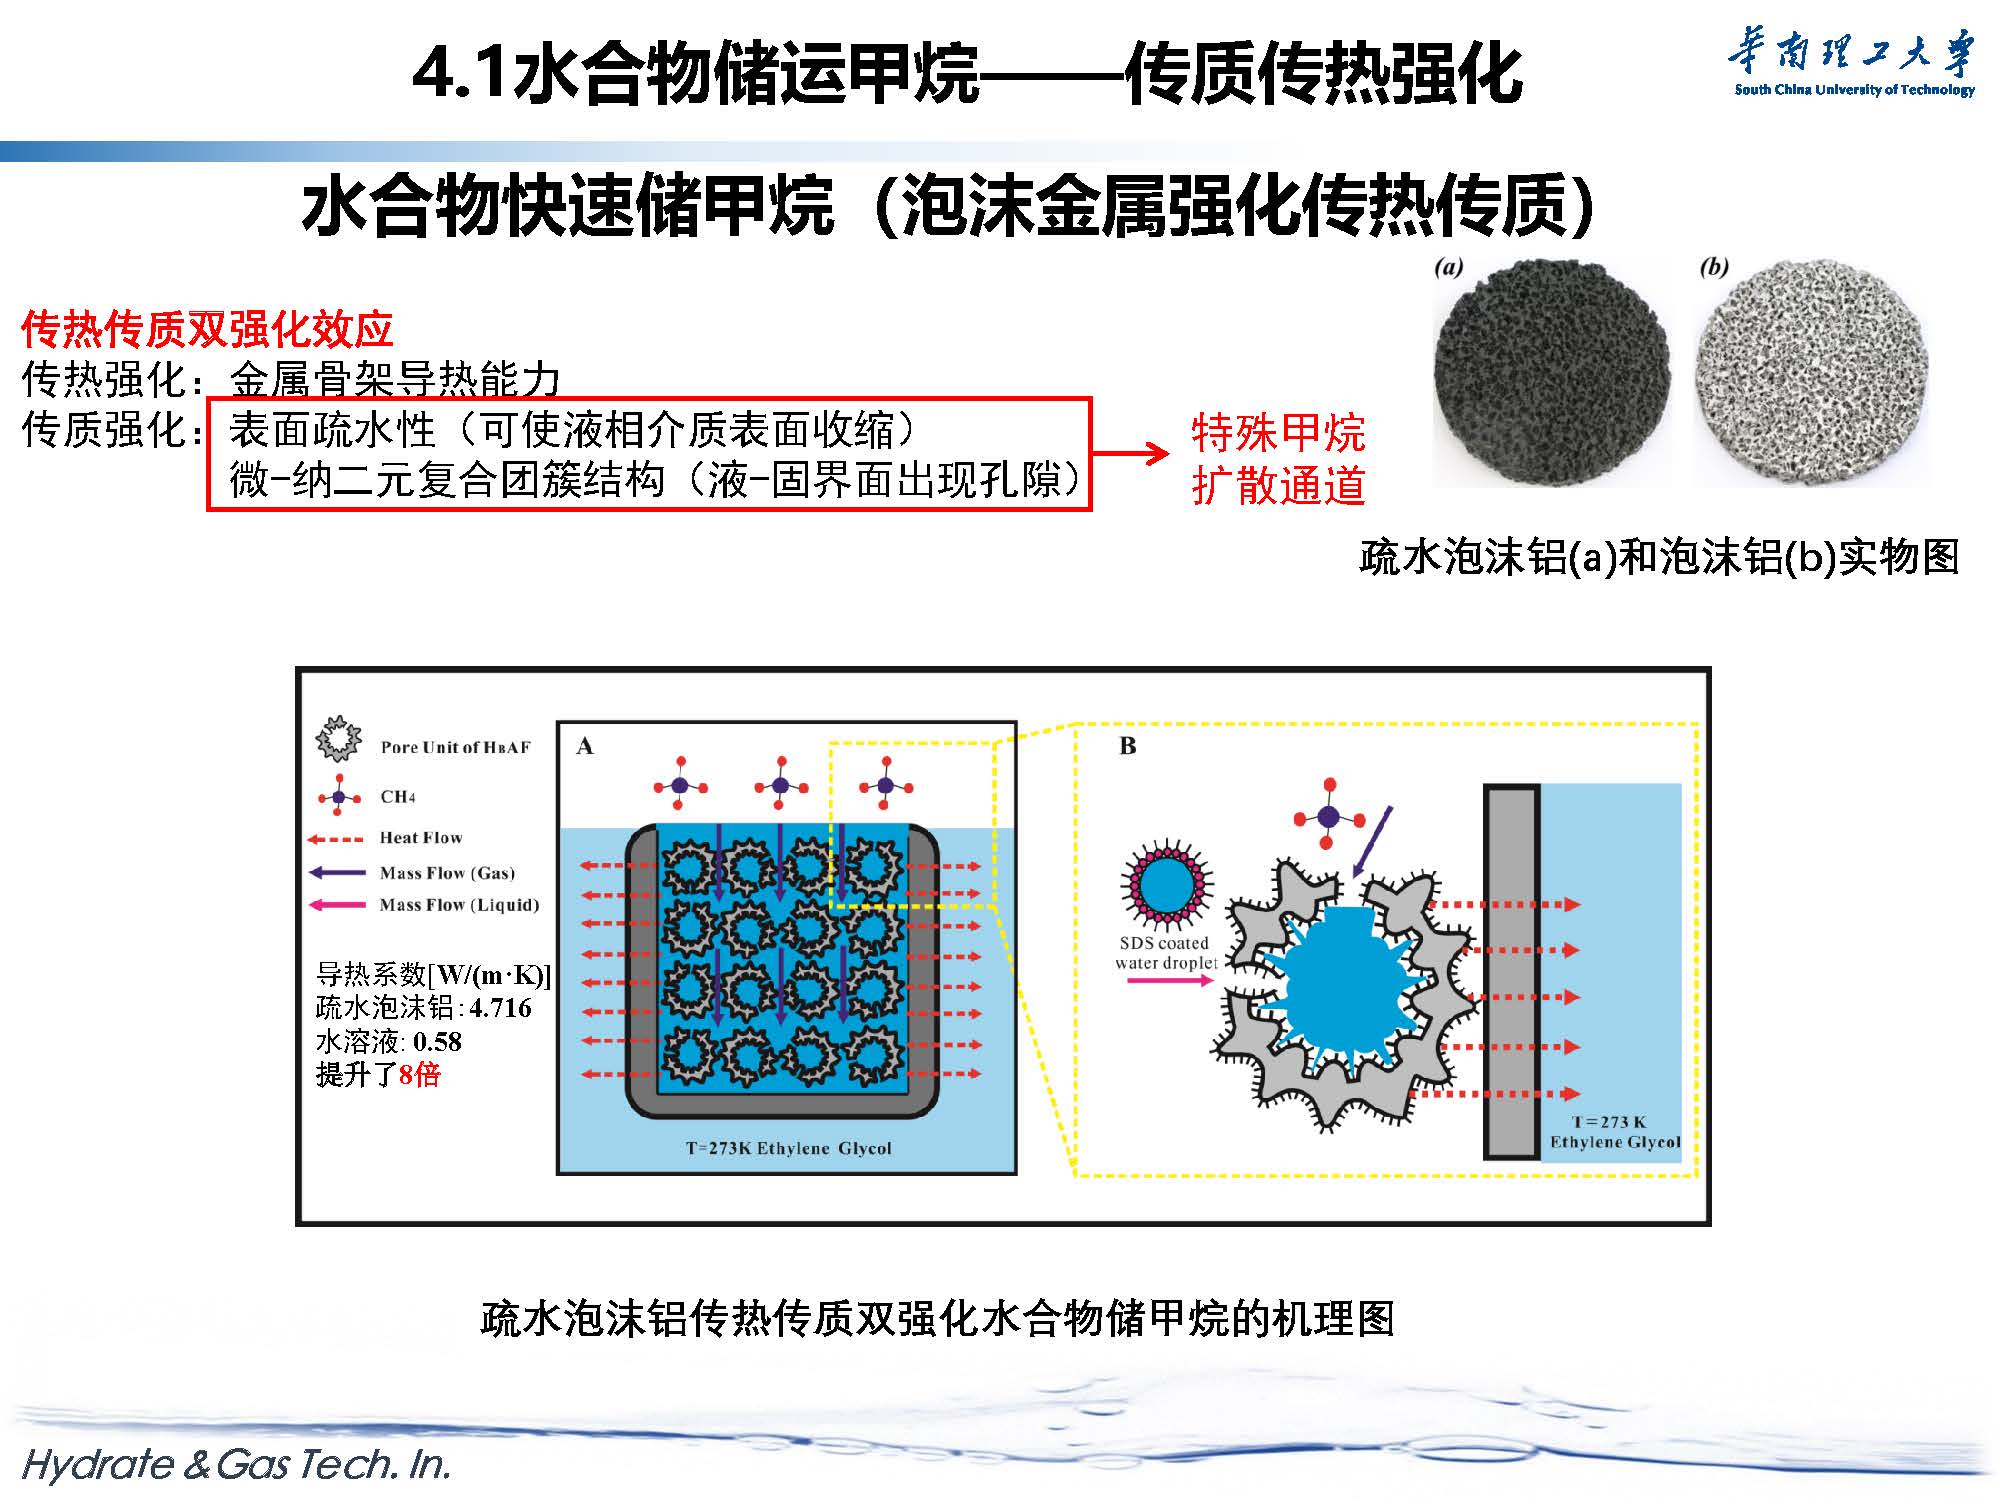 天然气水合物开采与新材料探索-forGJX_页面_43.jpg